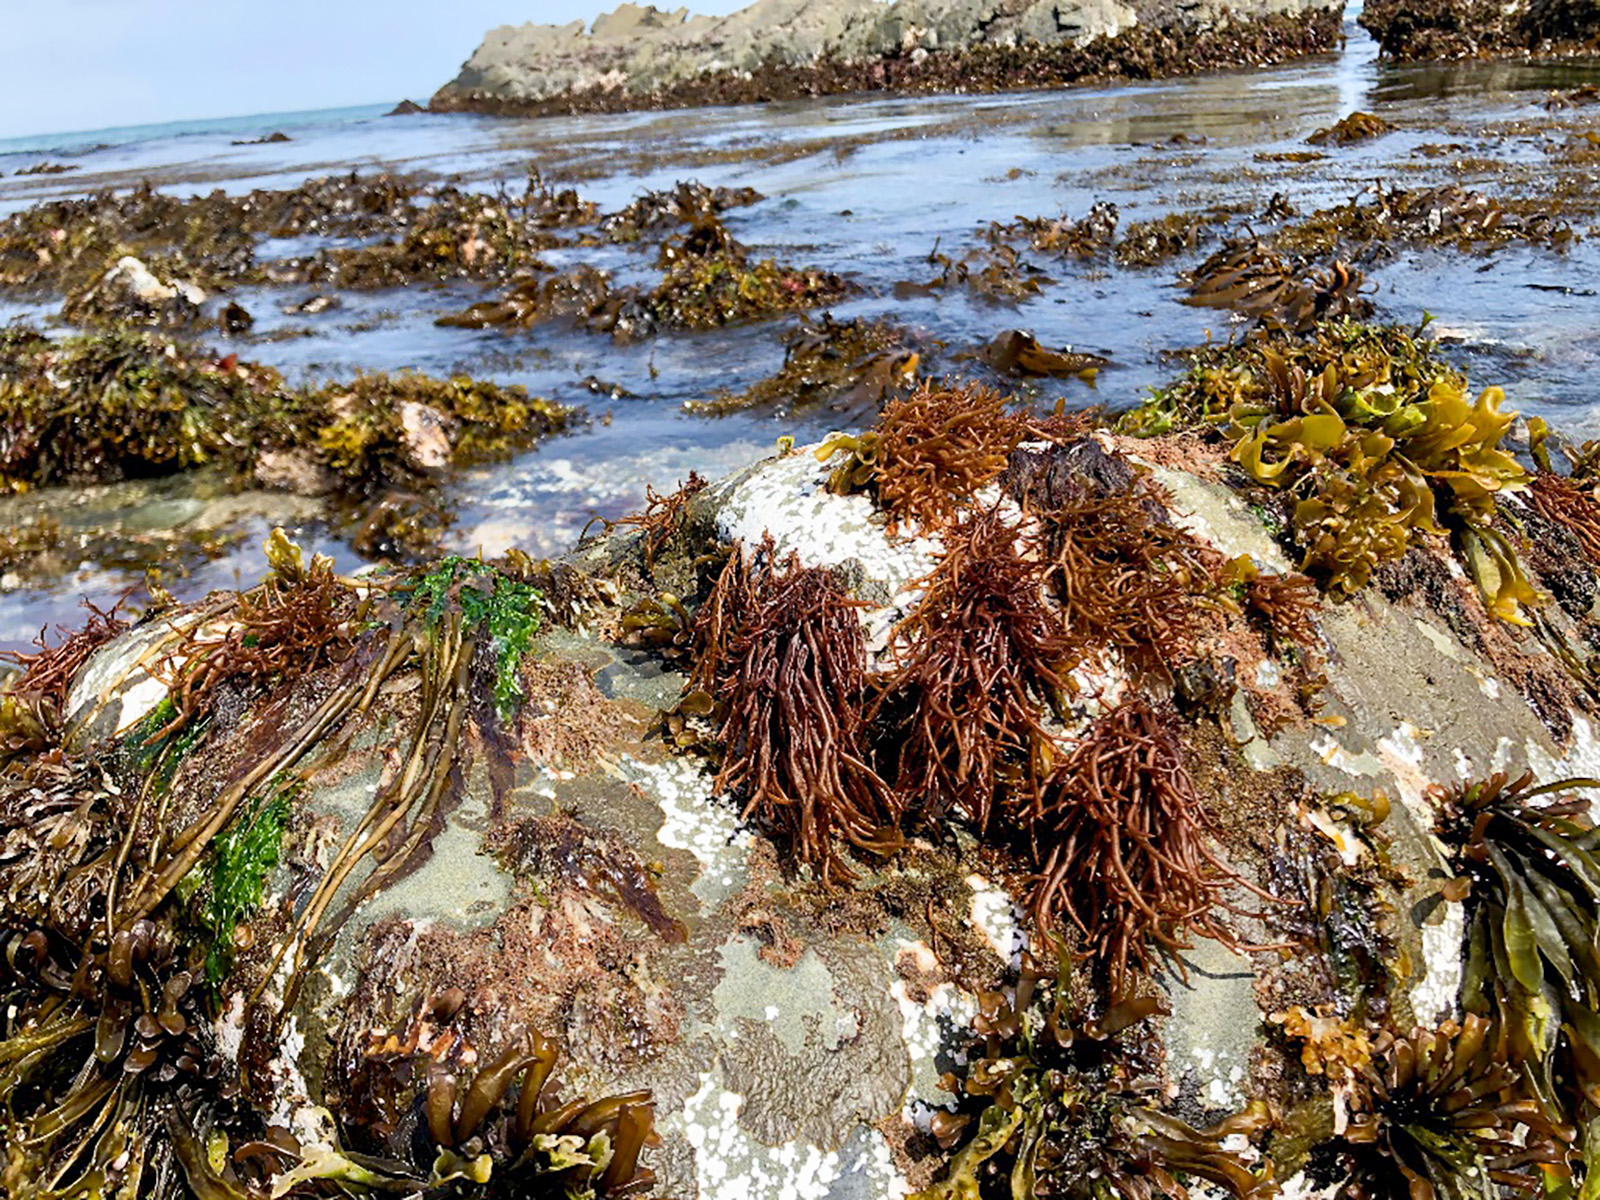 様々な種類の海藻が生える、地元の海の藻場